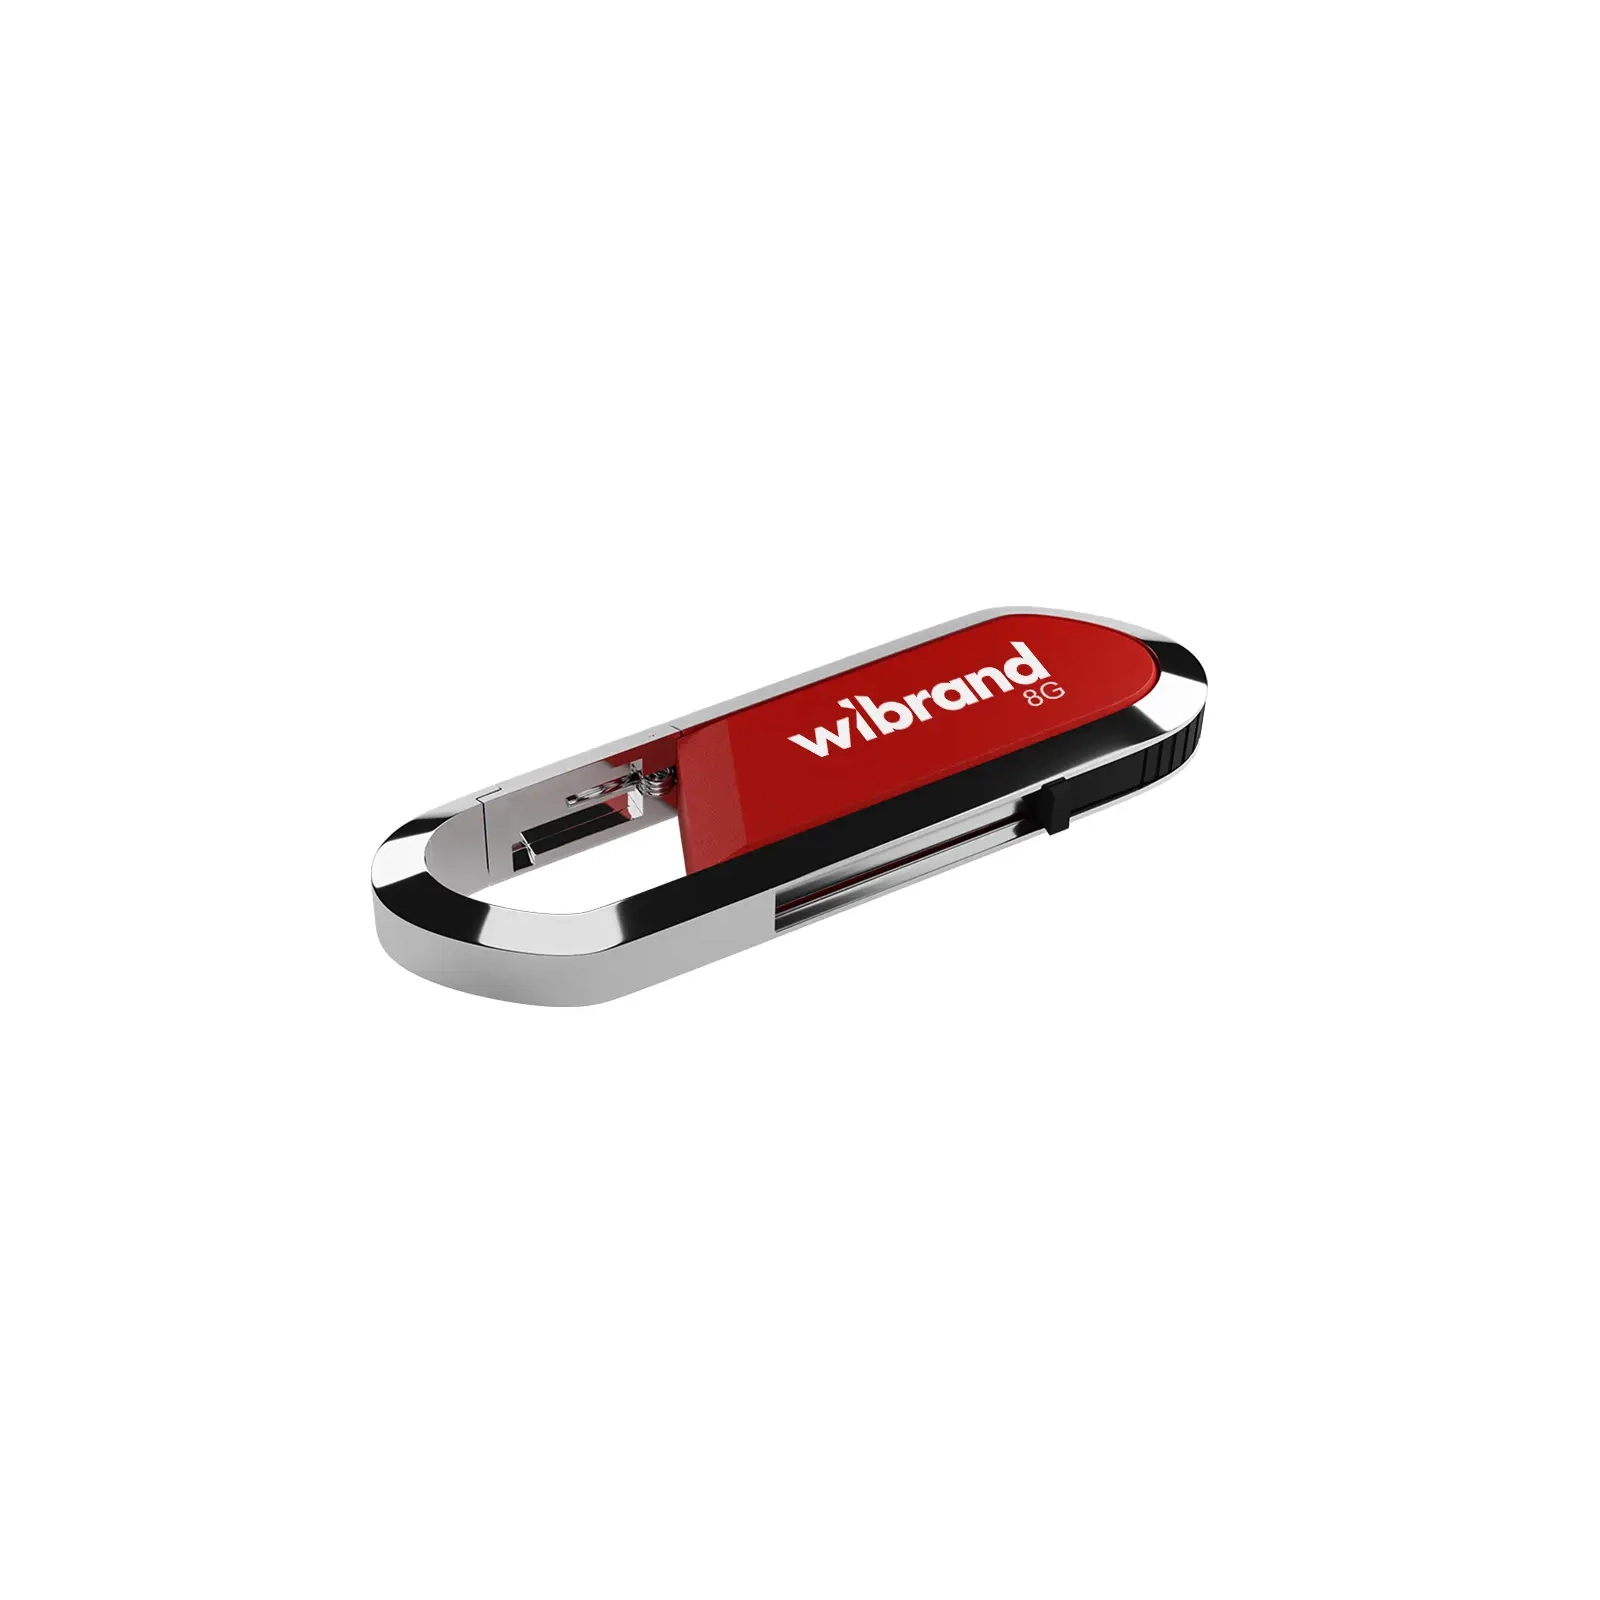 USB флеш накопитель Wibrand 8GB Aligator Black USB 2.0 (WI2.0/AL8U7B)